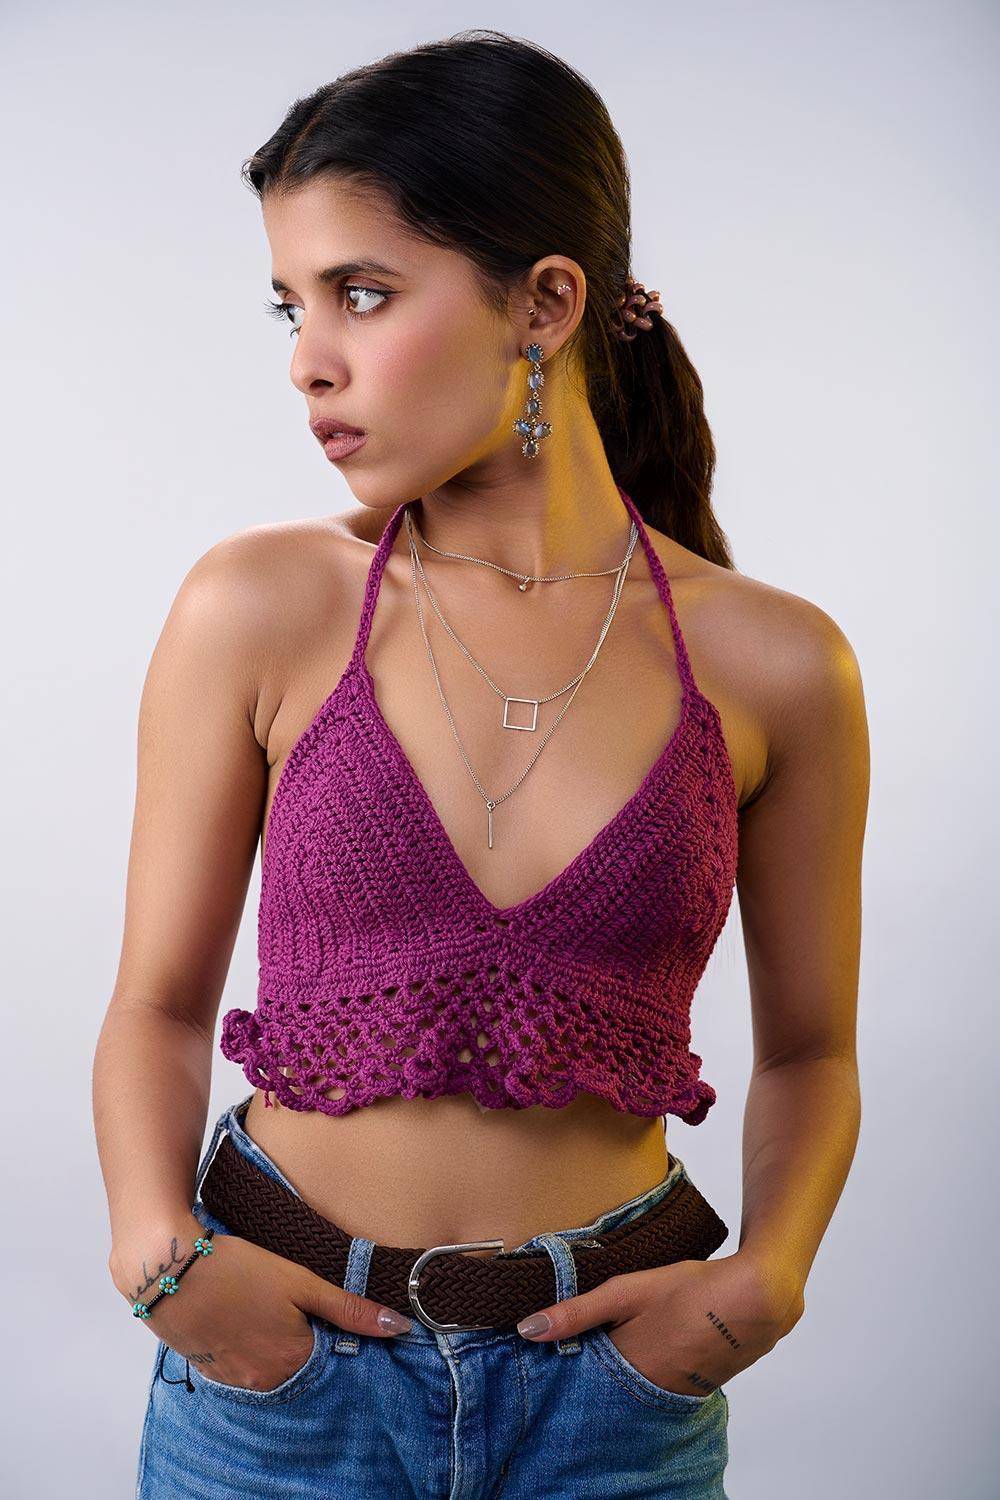 Buy Crochet Lavender Divine Bralette In the Best Price - Hand Knitted Crochet Top & Bralette 6